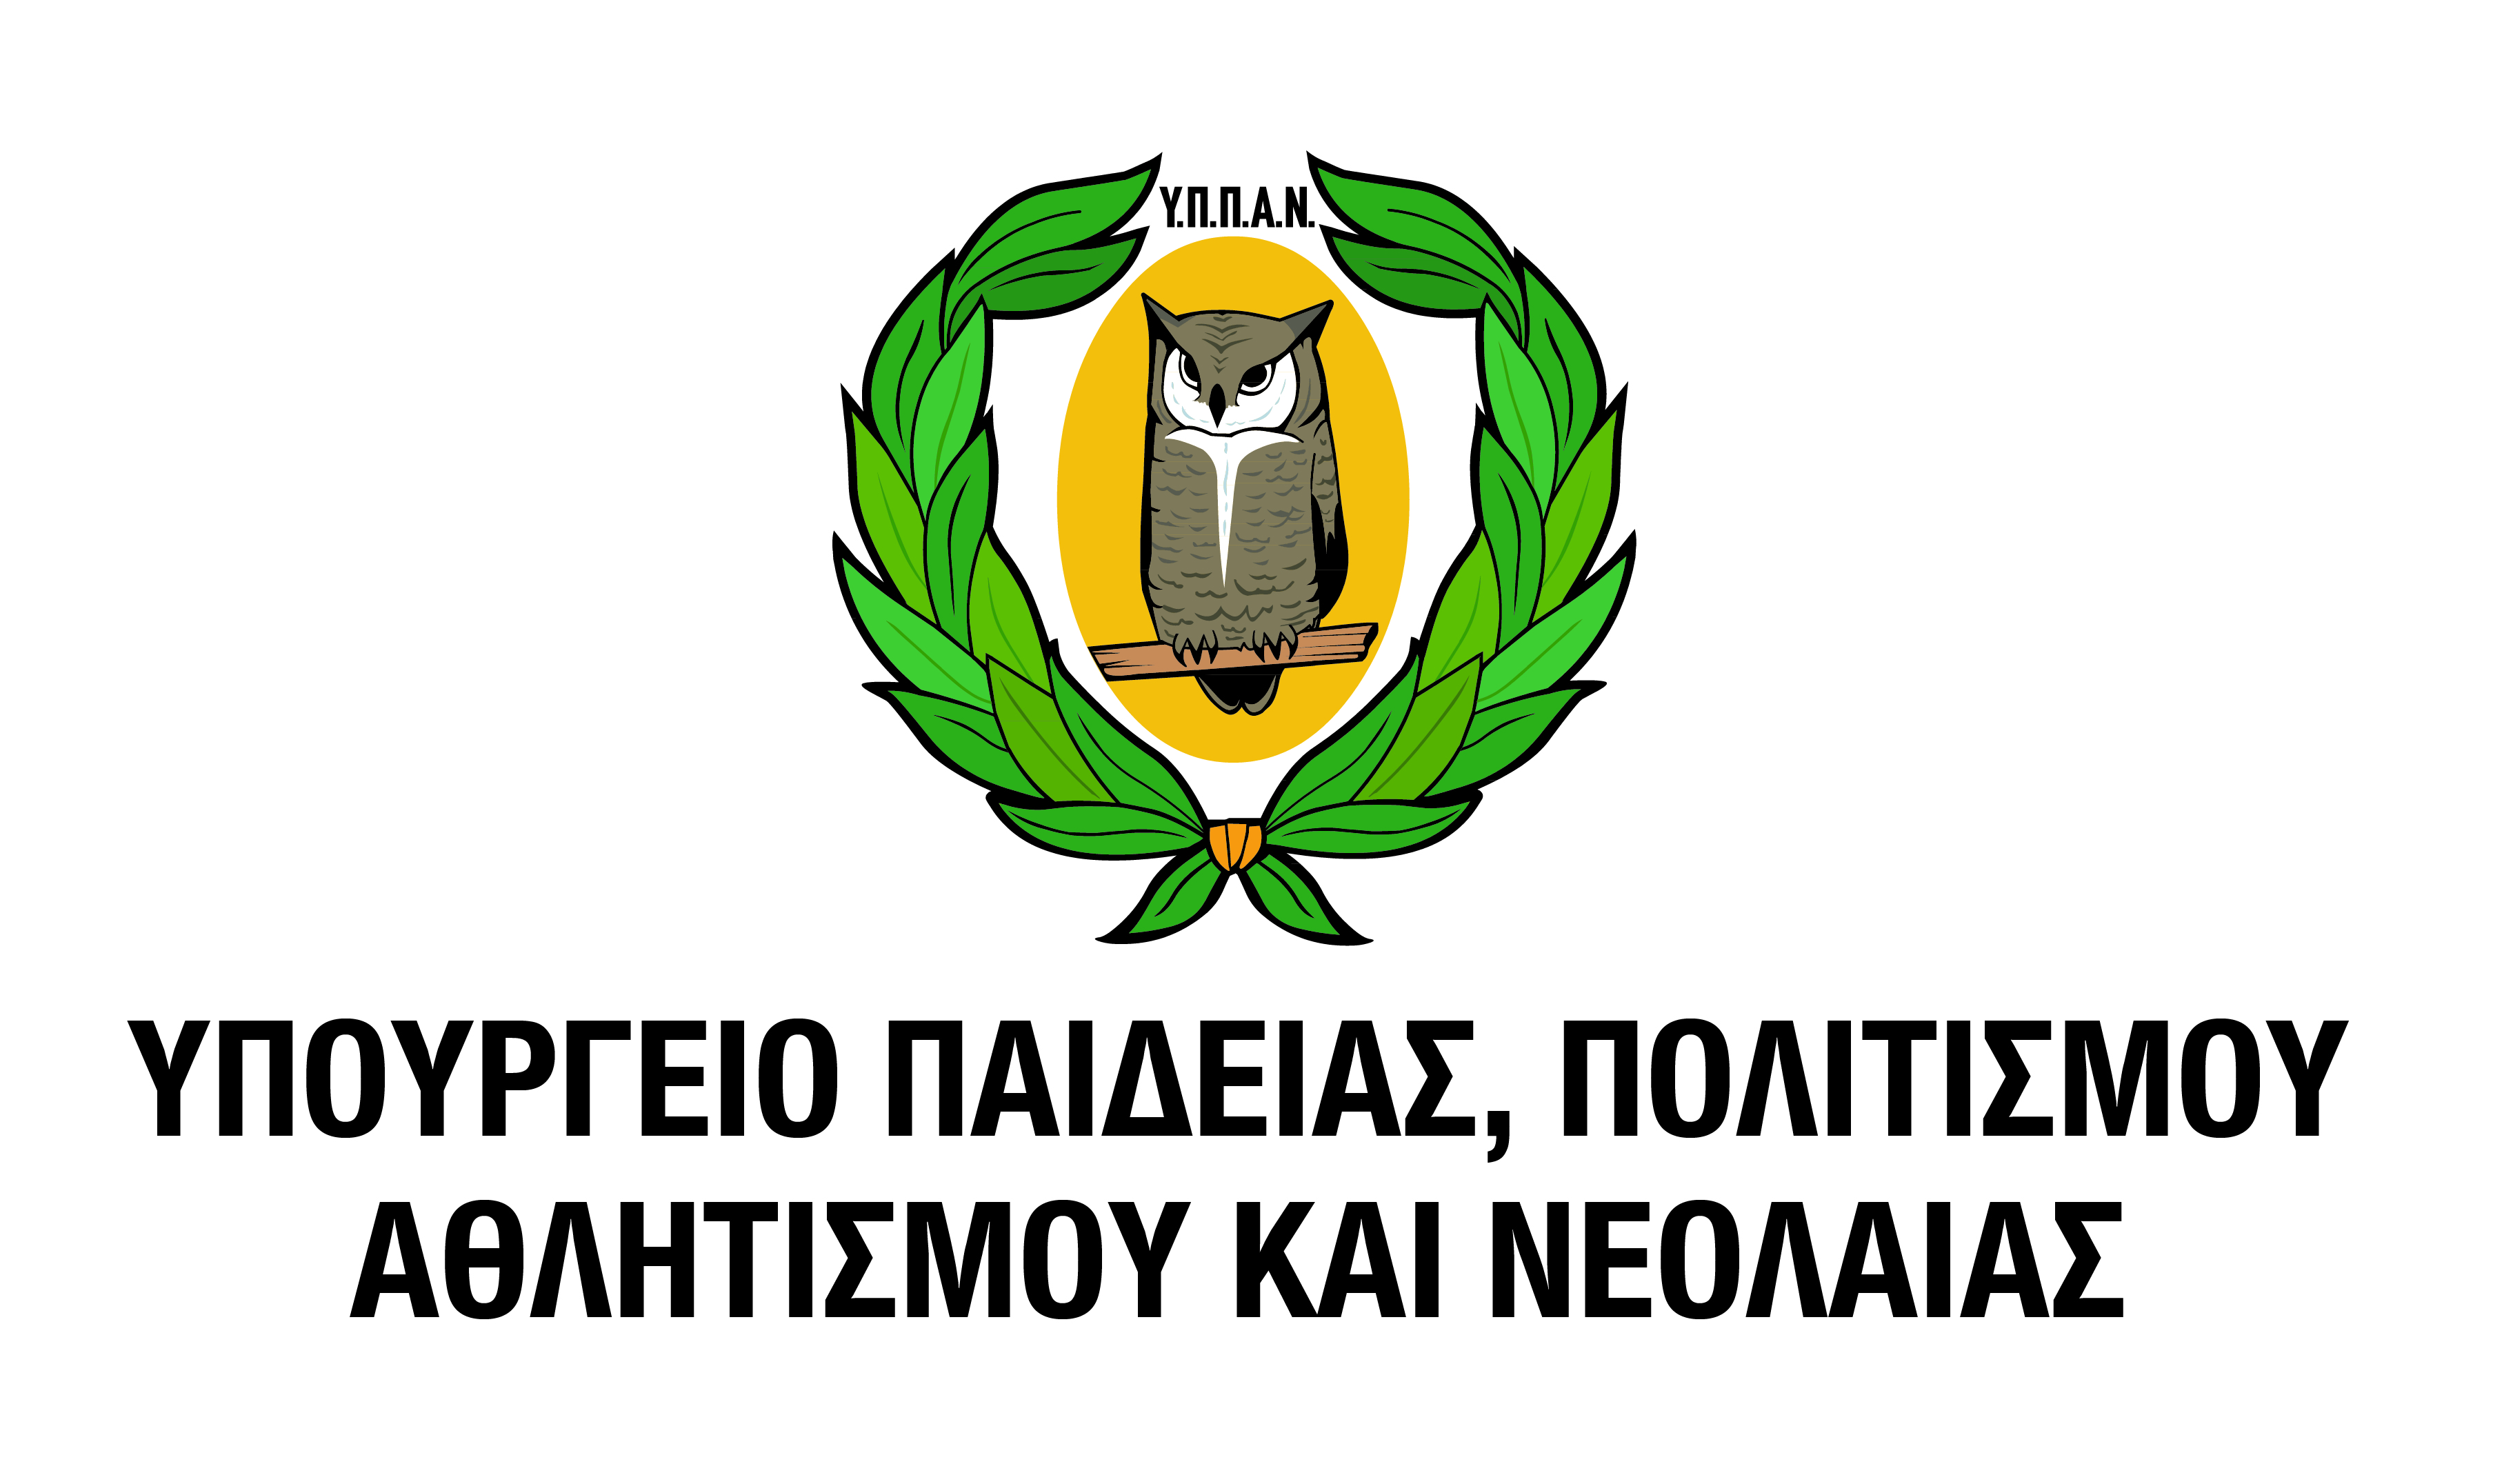 YPPAN logo1 GR